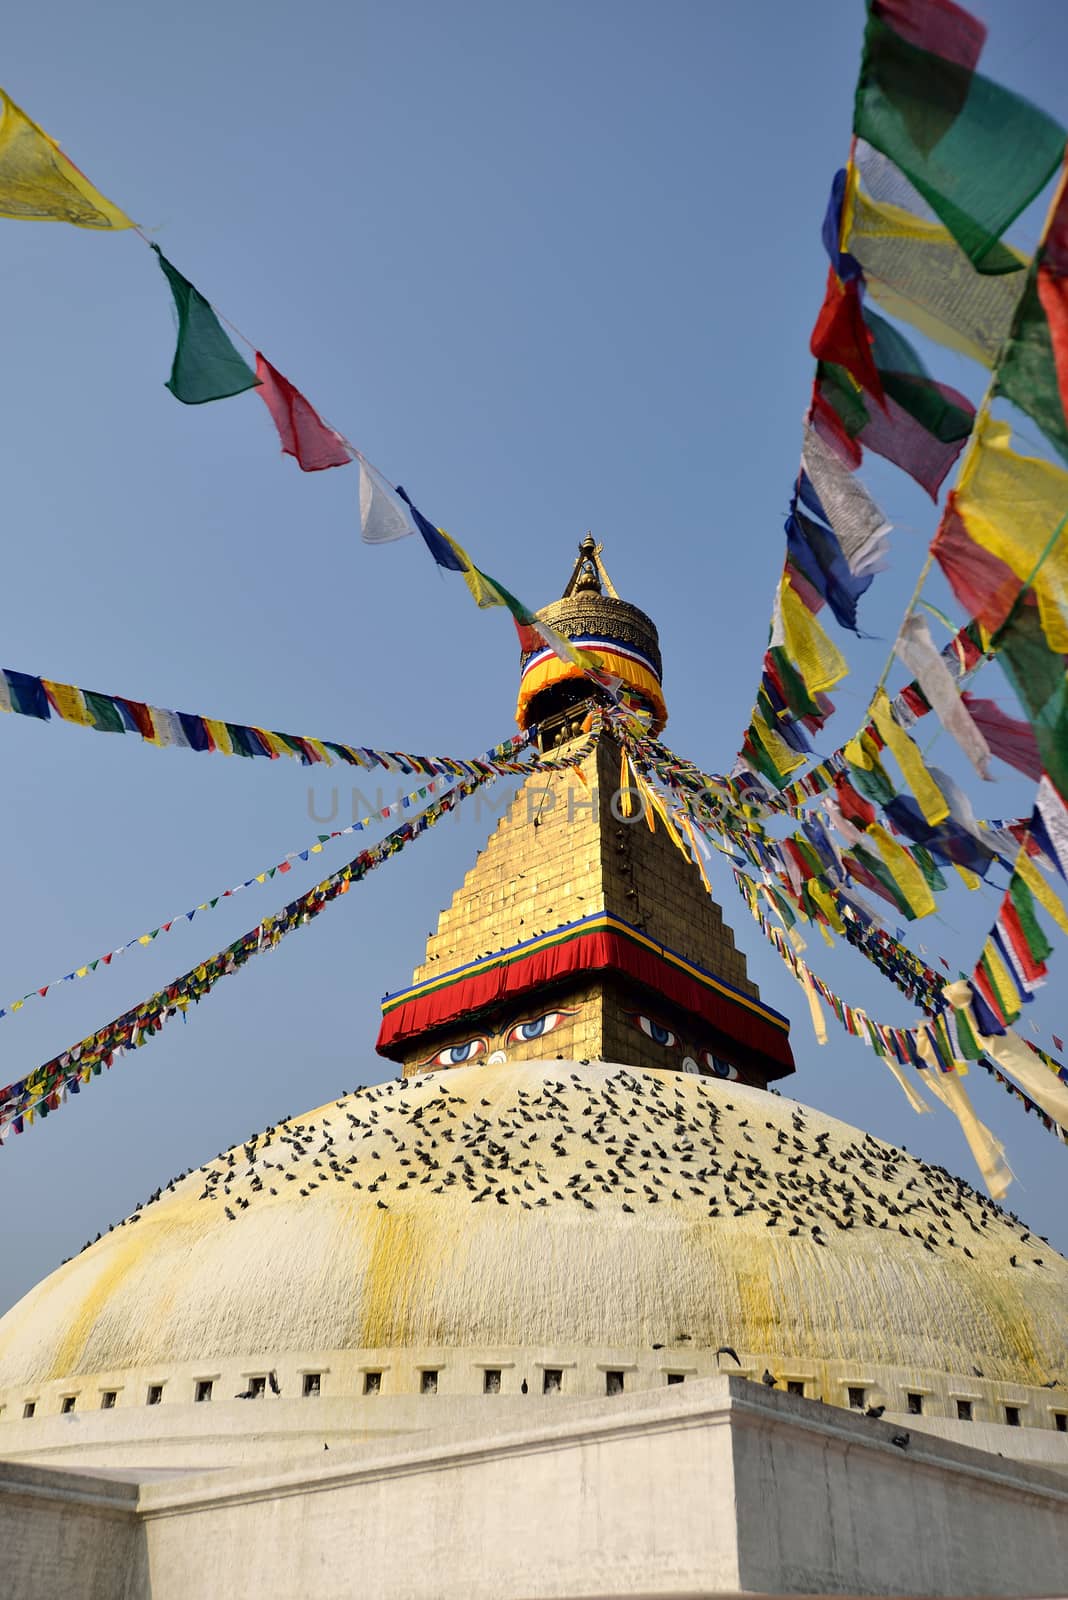 Boudhanath buddhist stupa in Kathmandu capital of Nepal by think4photop